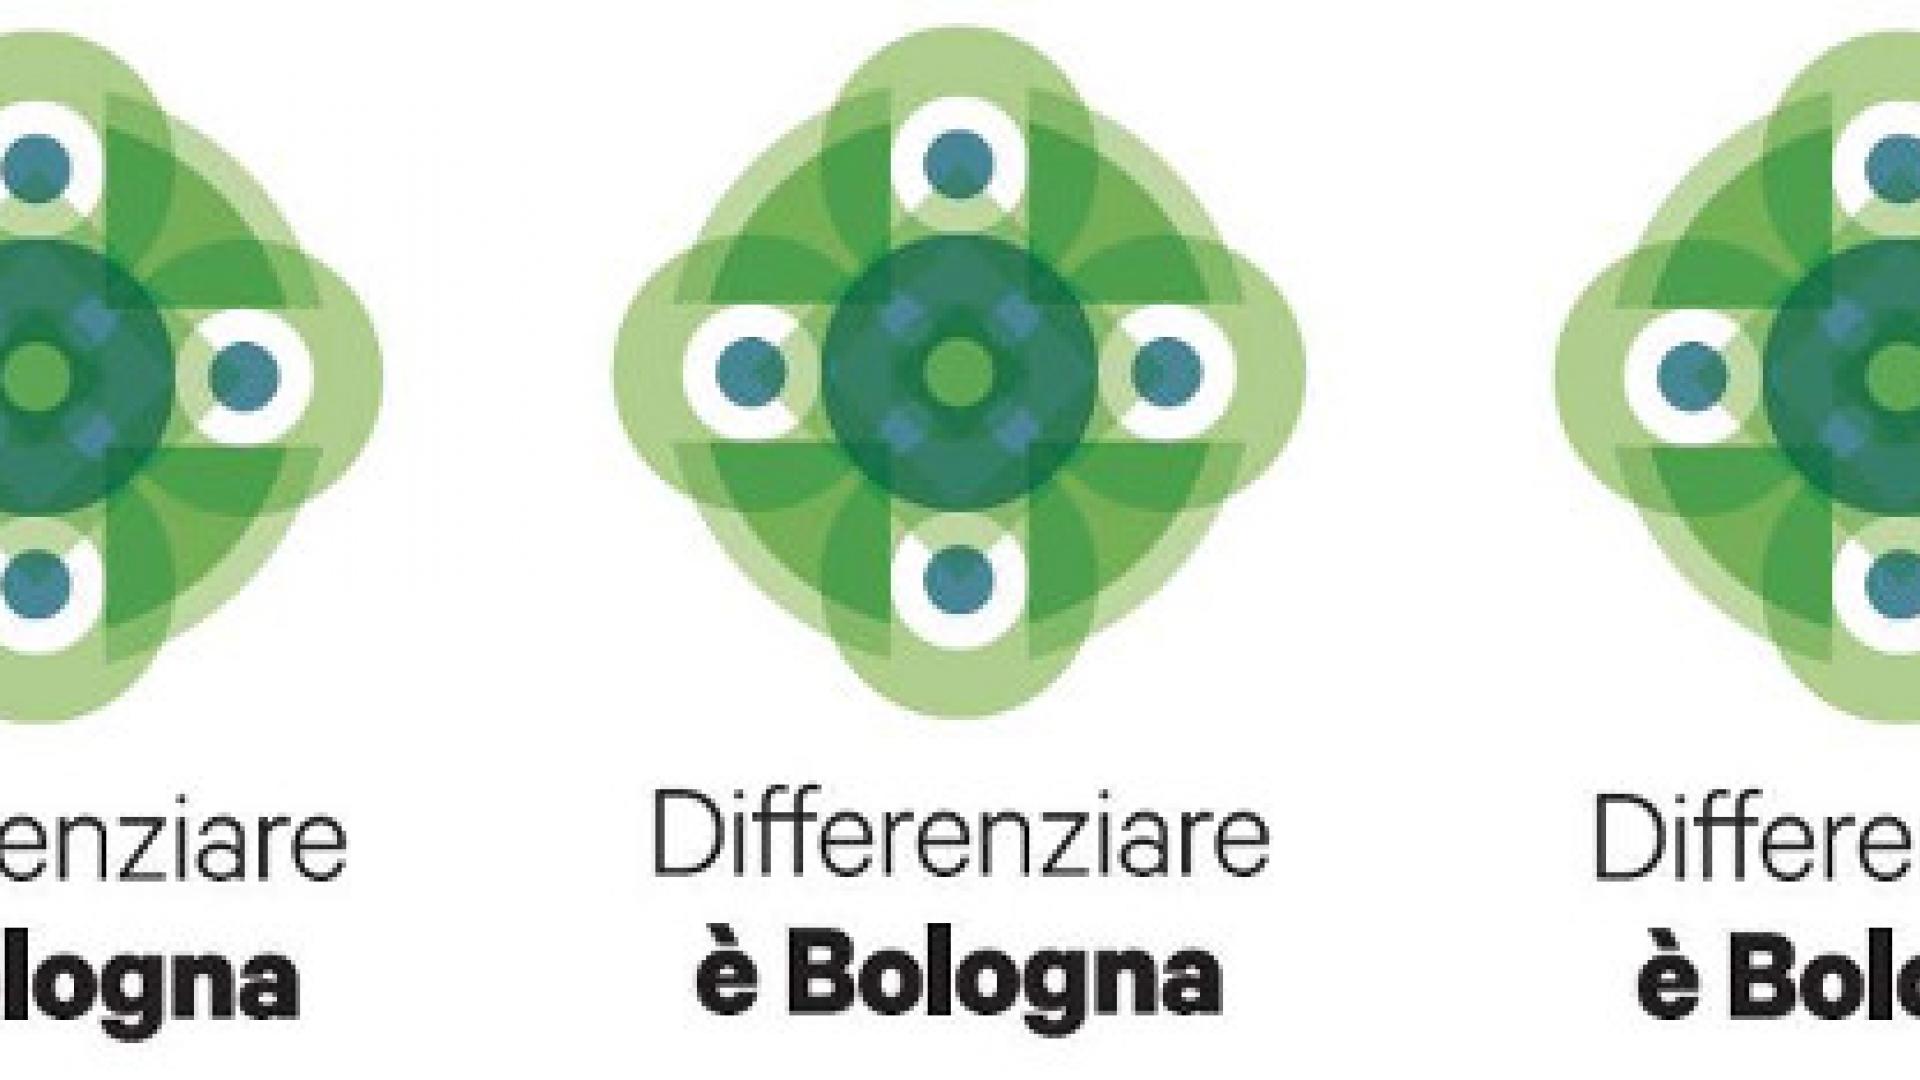 city brand Differenziare è Bologna